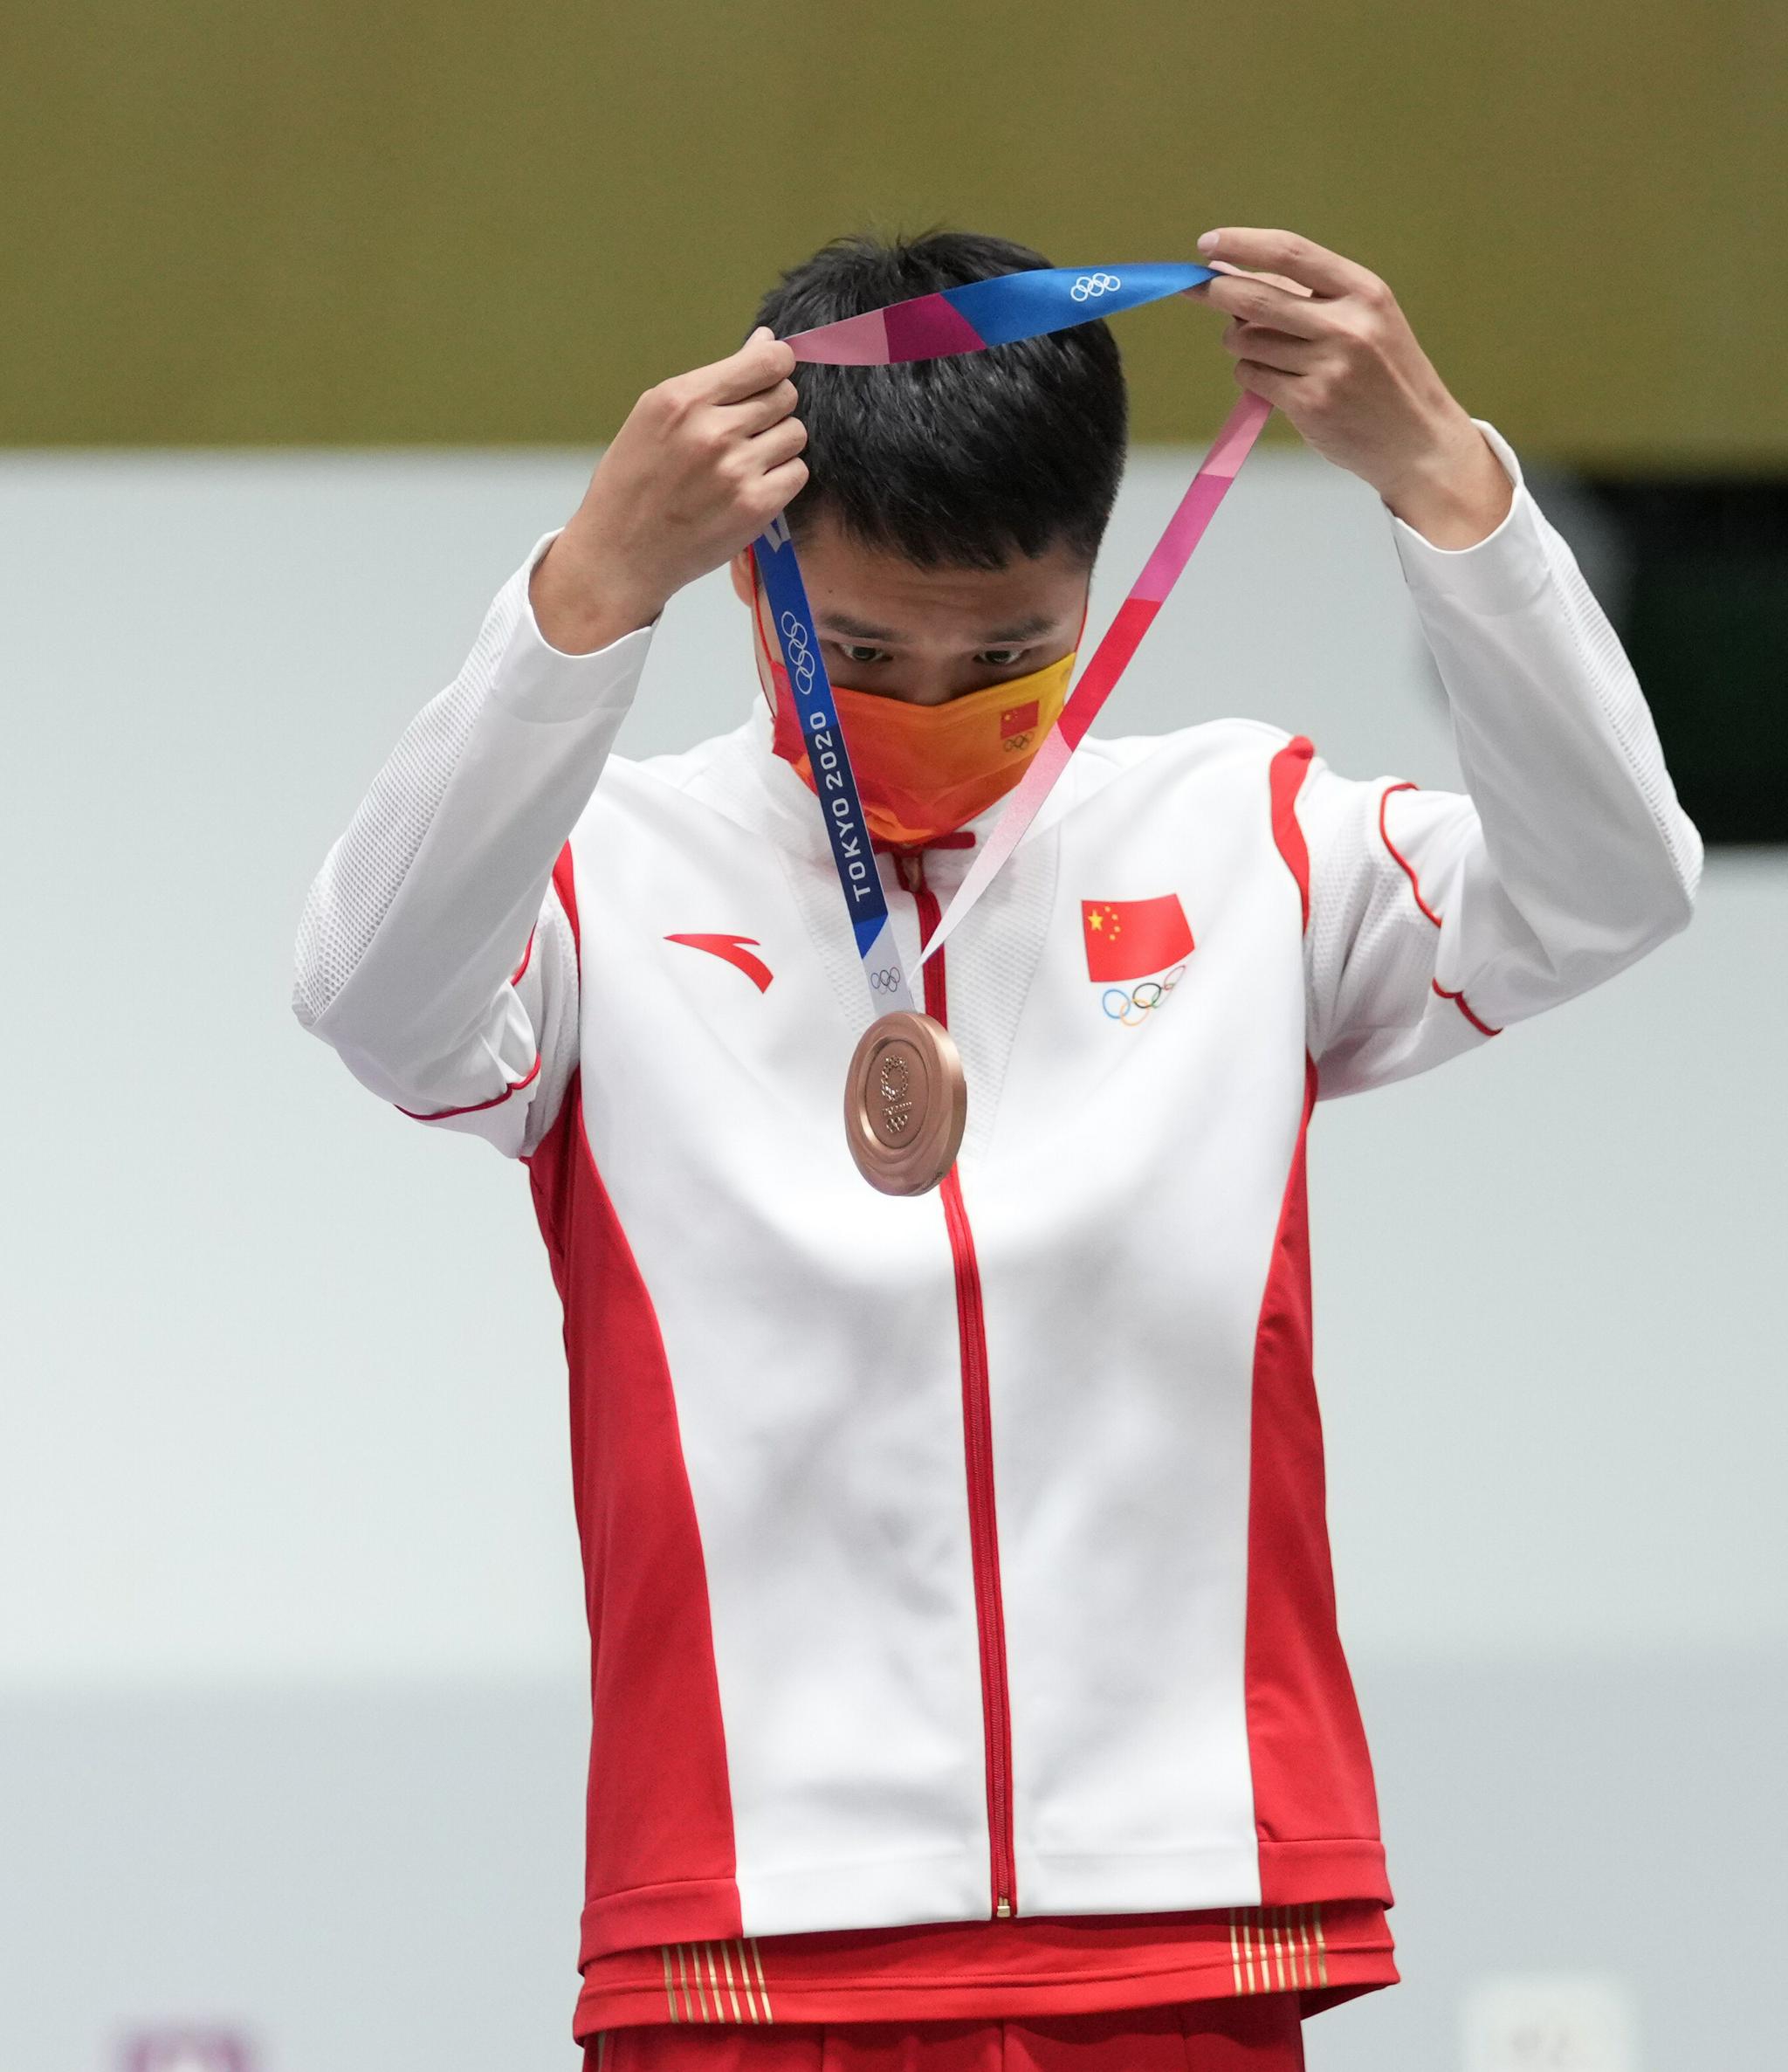 东京奥运会铜牌图片